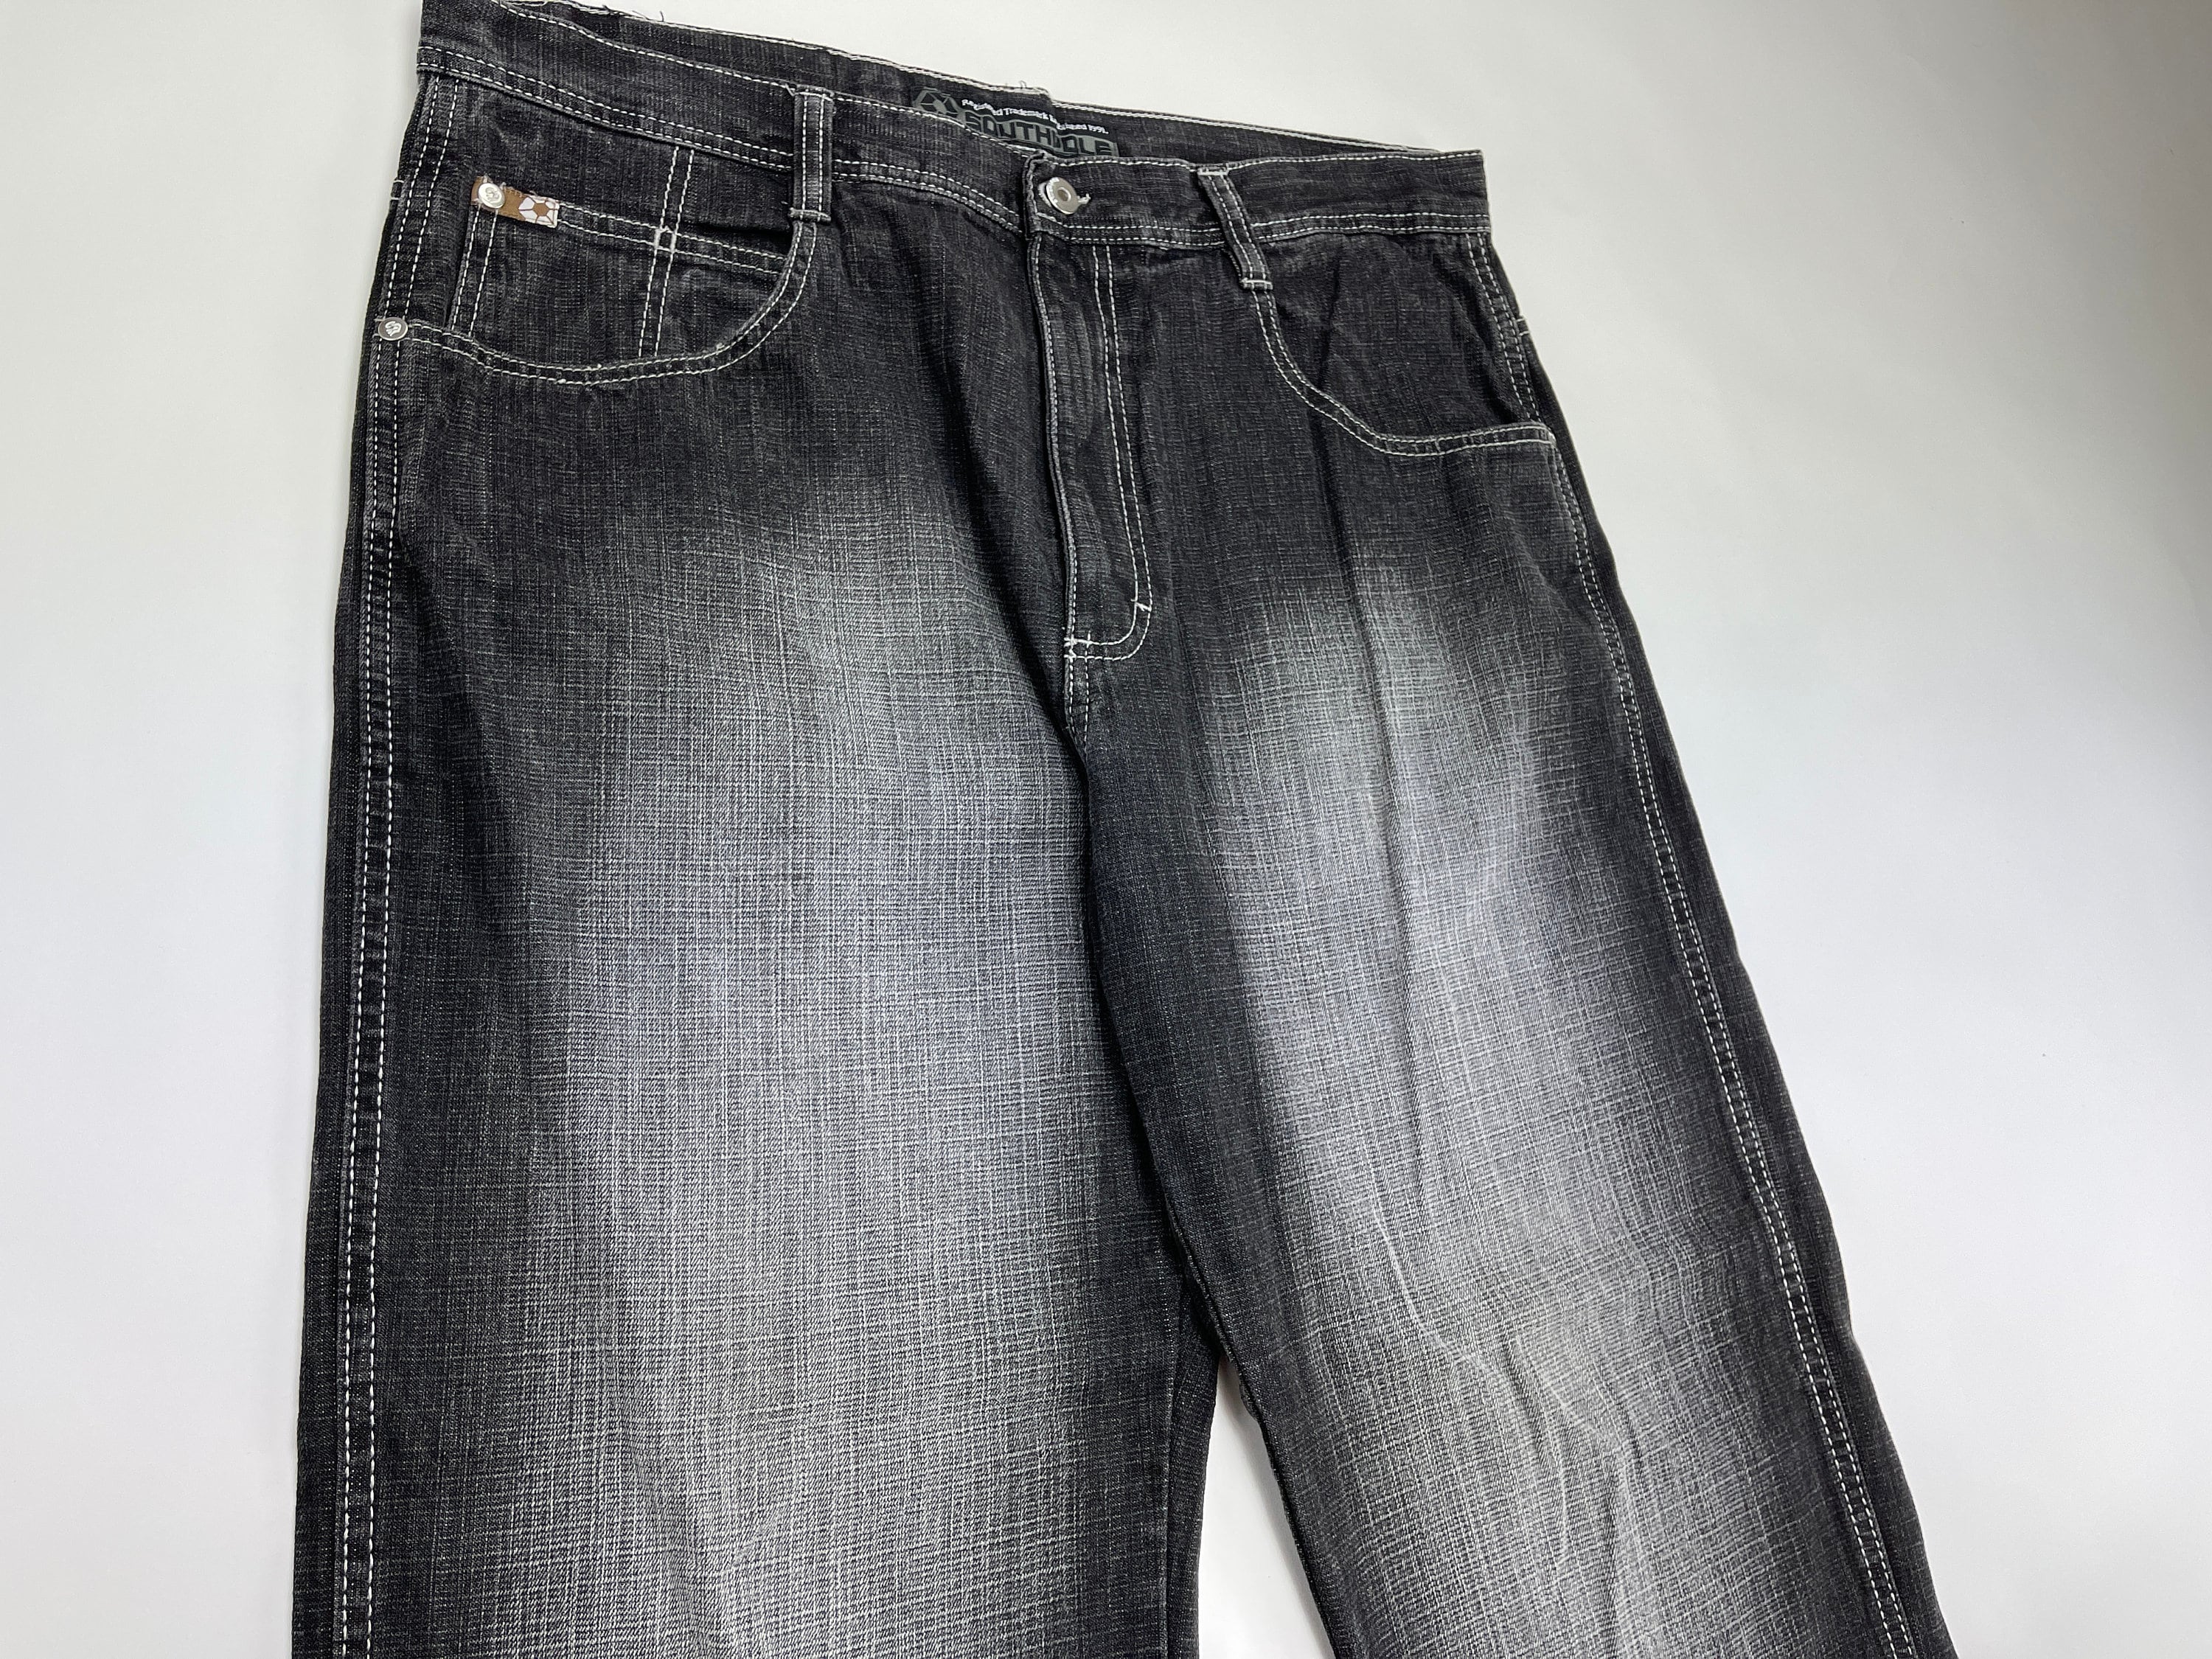 Southpole jeans black vintage baggy jeans 90s hip hop | Etsy